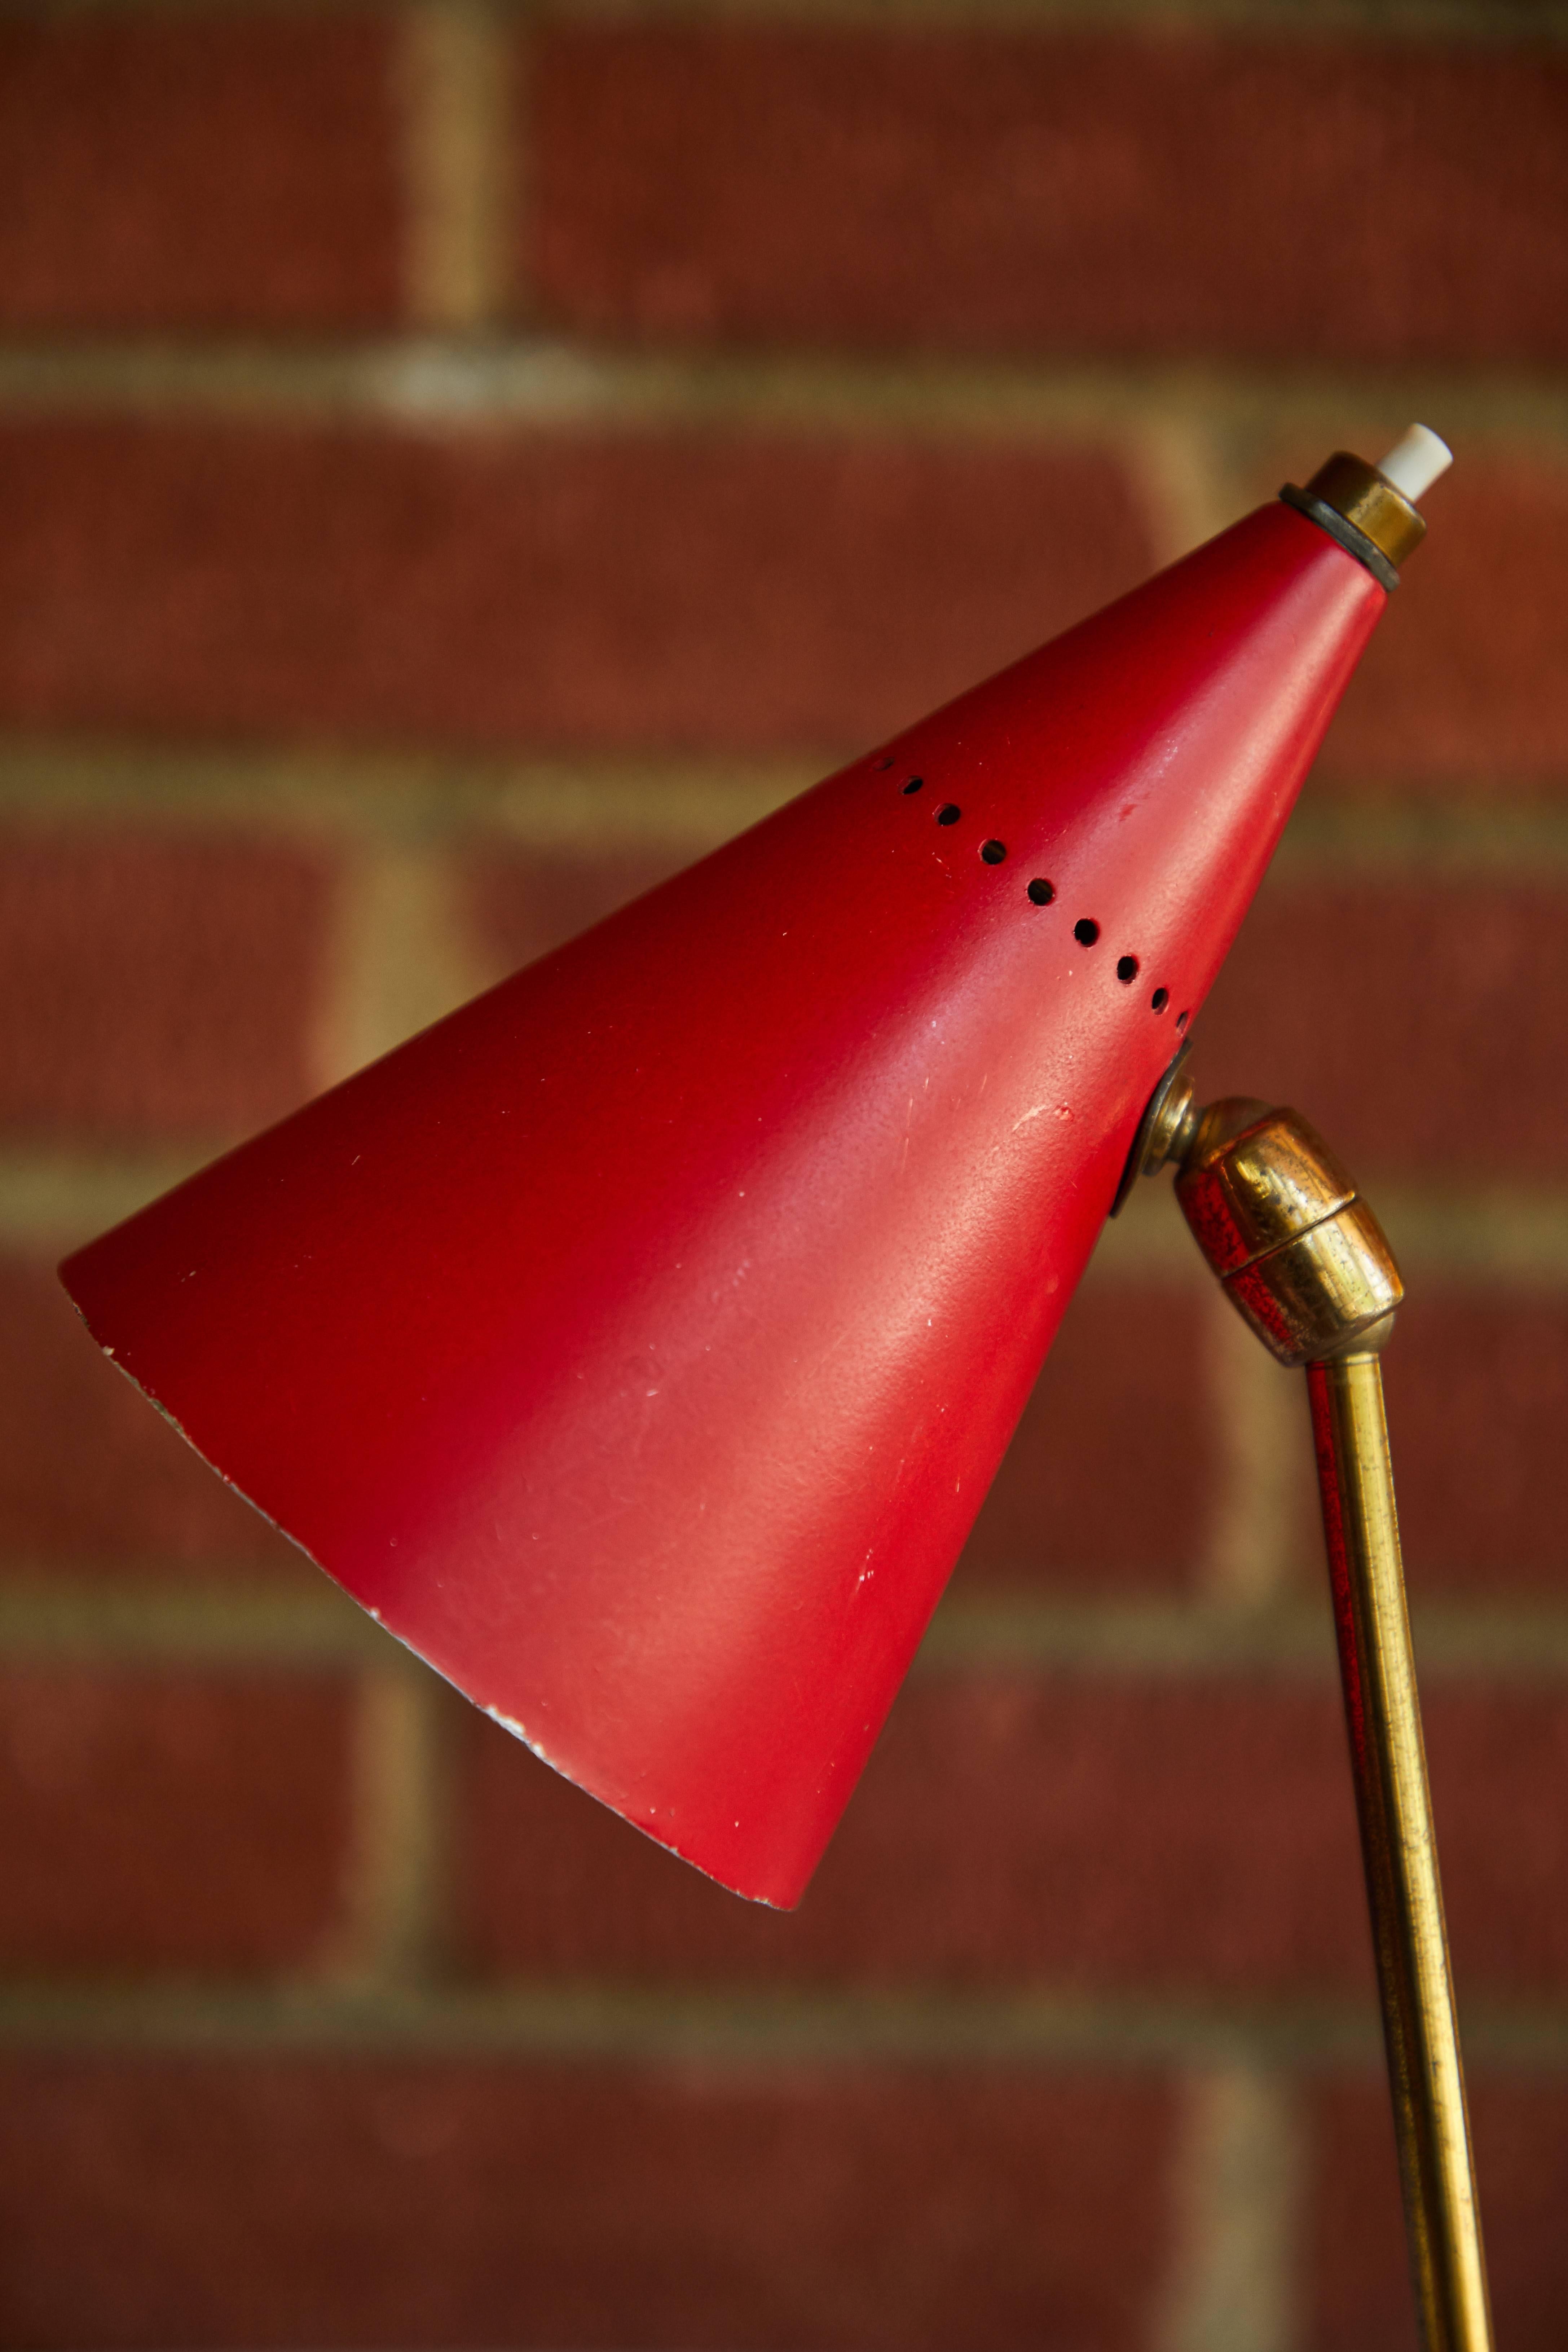 Rote Kegel-Tischlampe von Giuseppe Ostuni für Oluce, 1950er Jahre (Mitte des 20. Jahrhunderts)